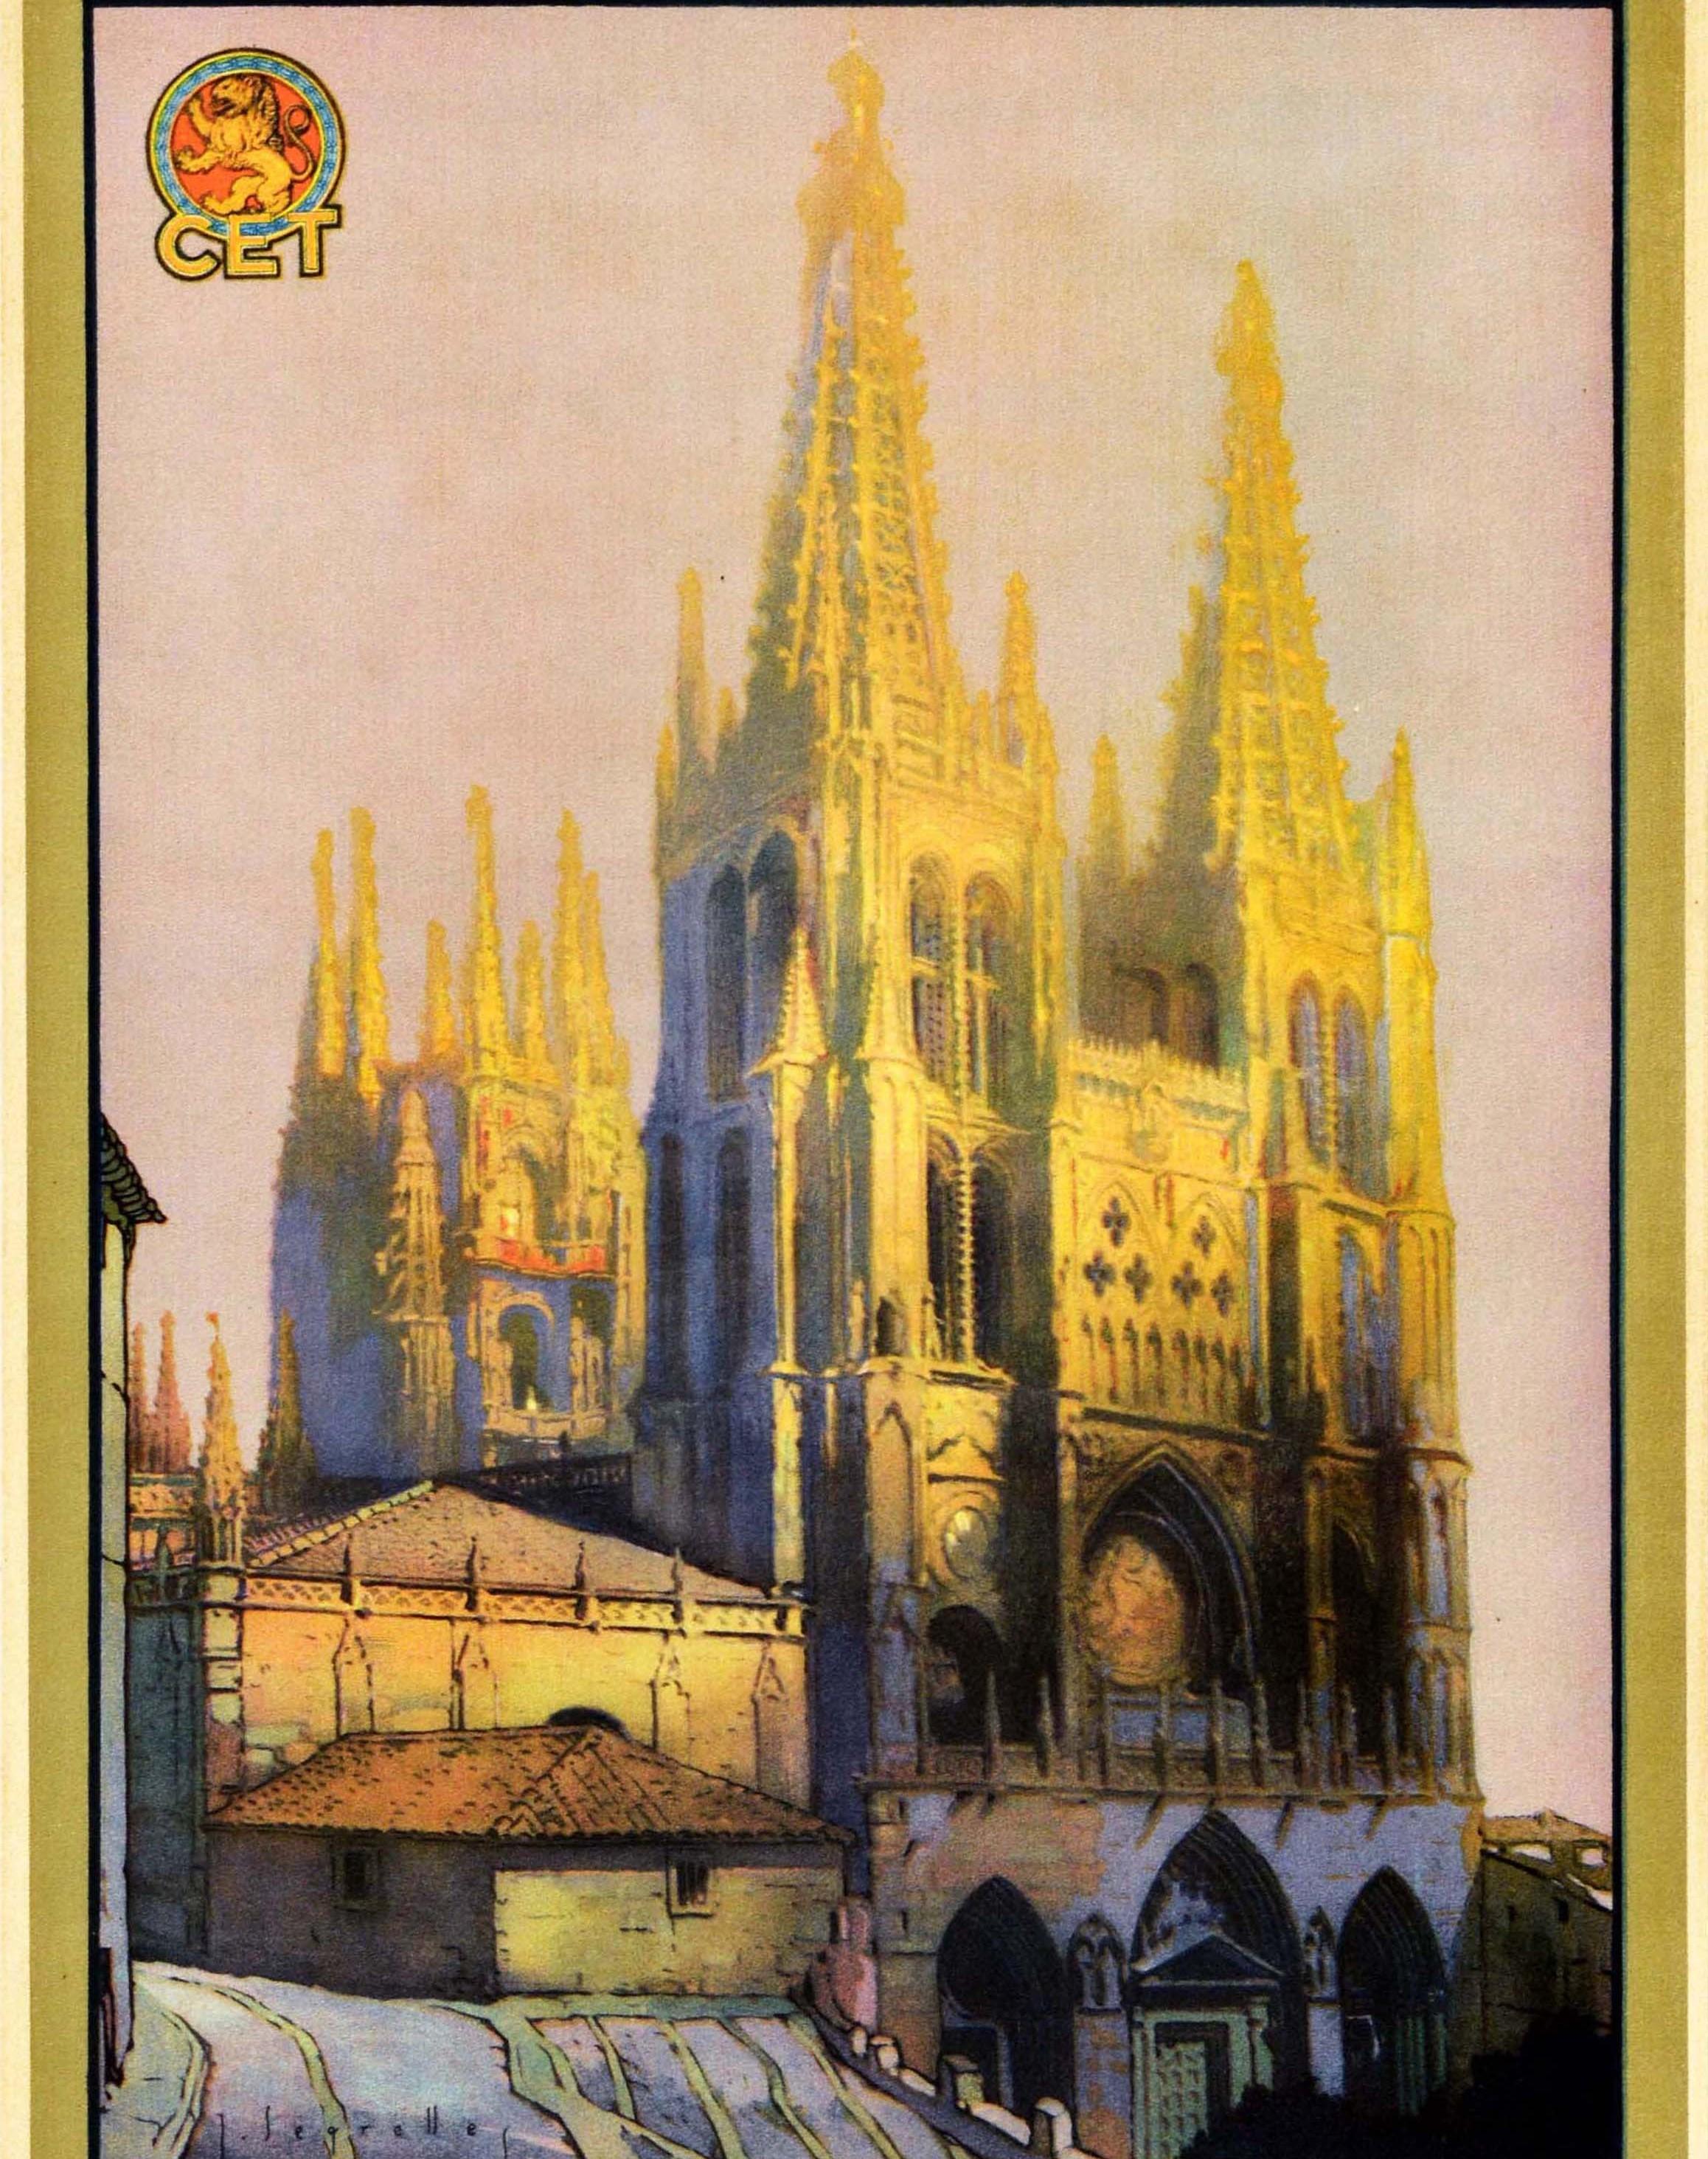 Spanish Original Vintage Travel Poster Visitad Burgos Cid Campeador Spain Cathedral City